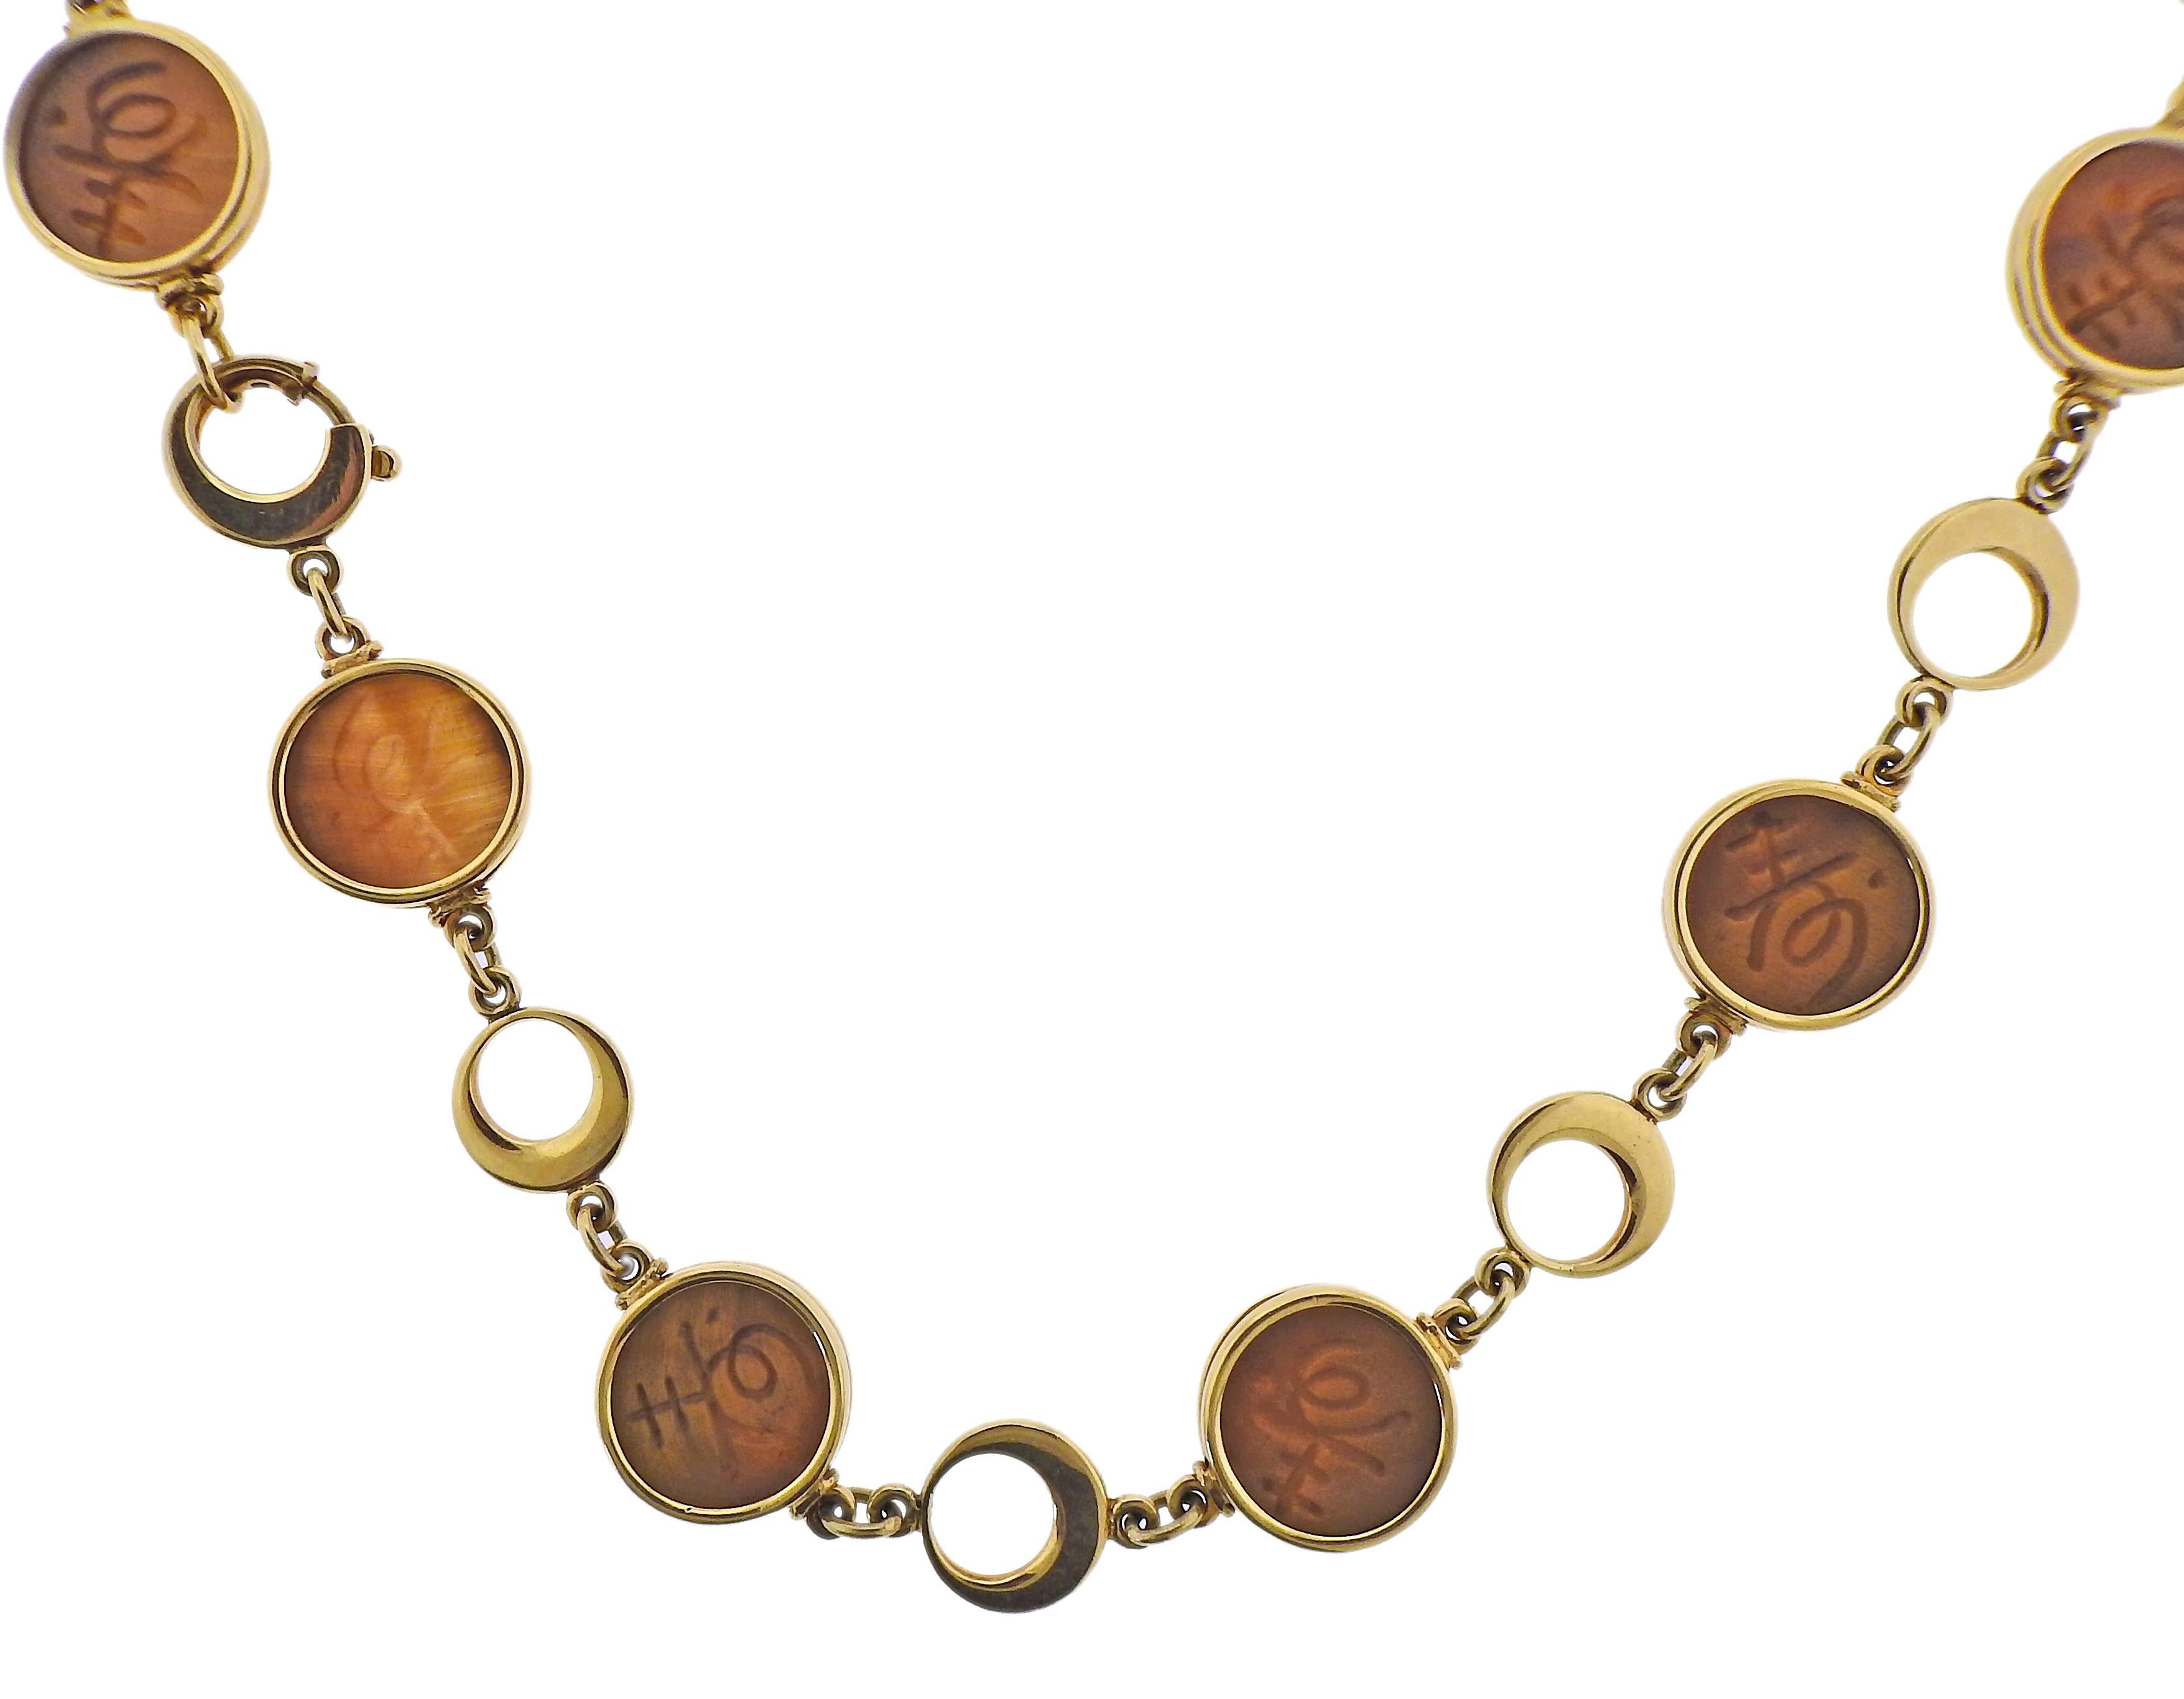 Collier à maillons circulaires en or jaune 18k avec œil de tigre sculpté. Le collier fait 34